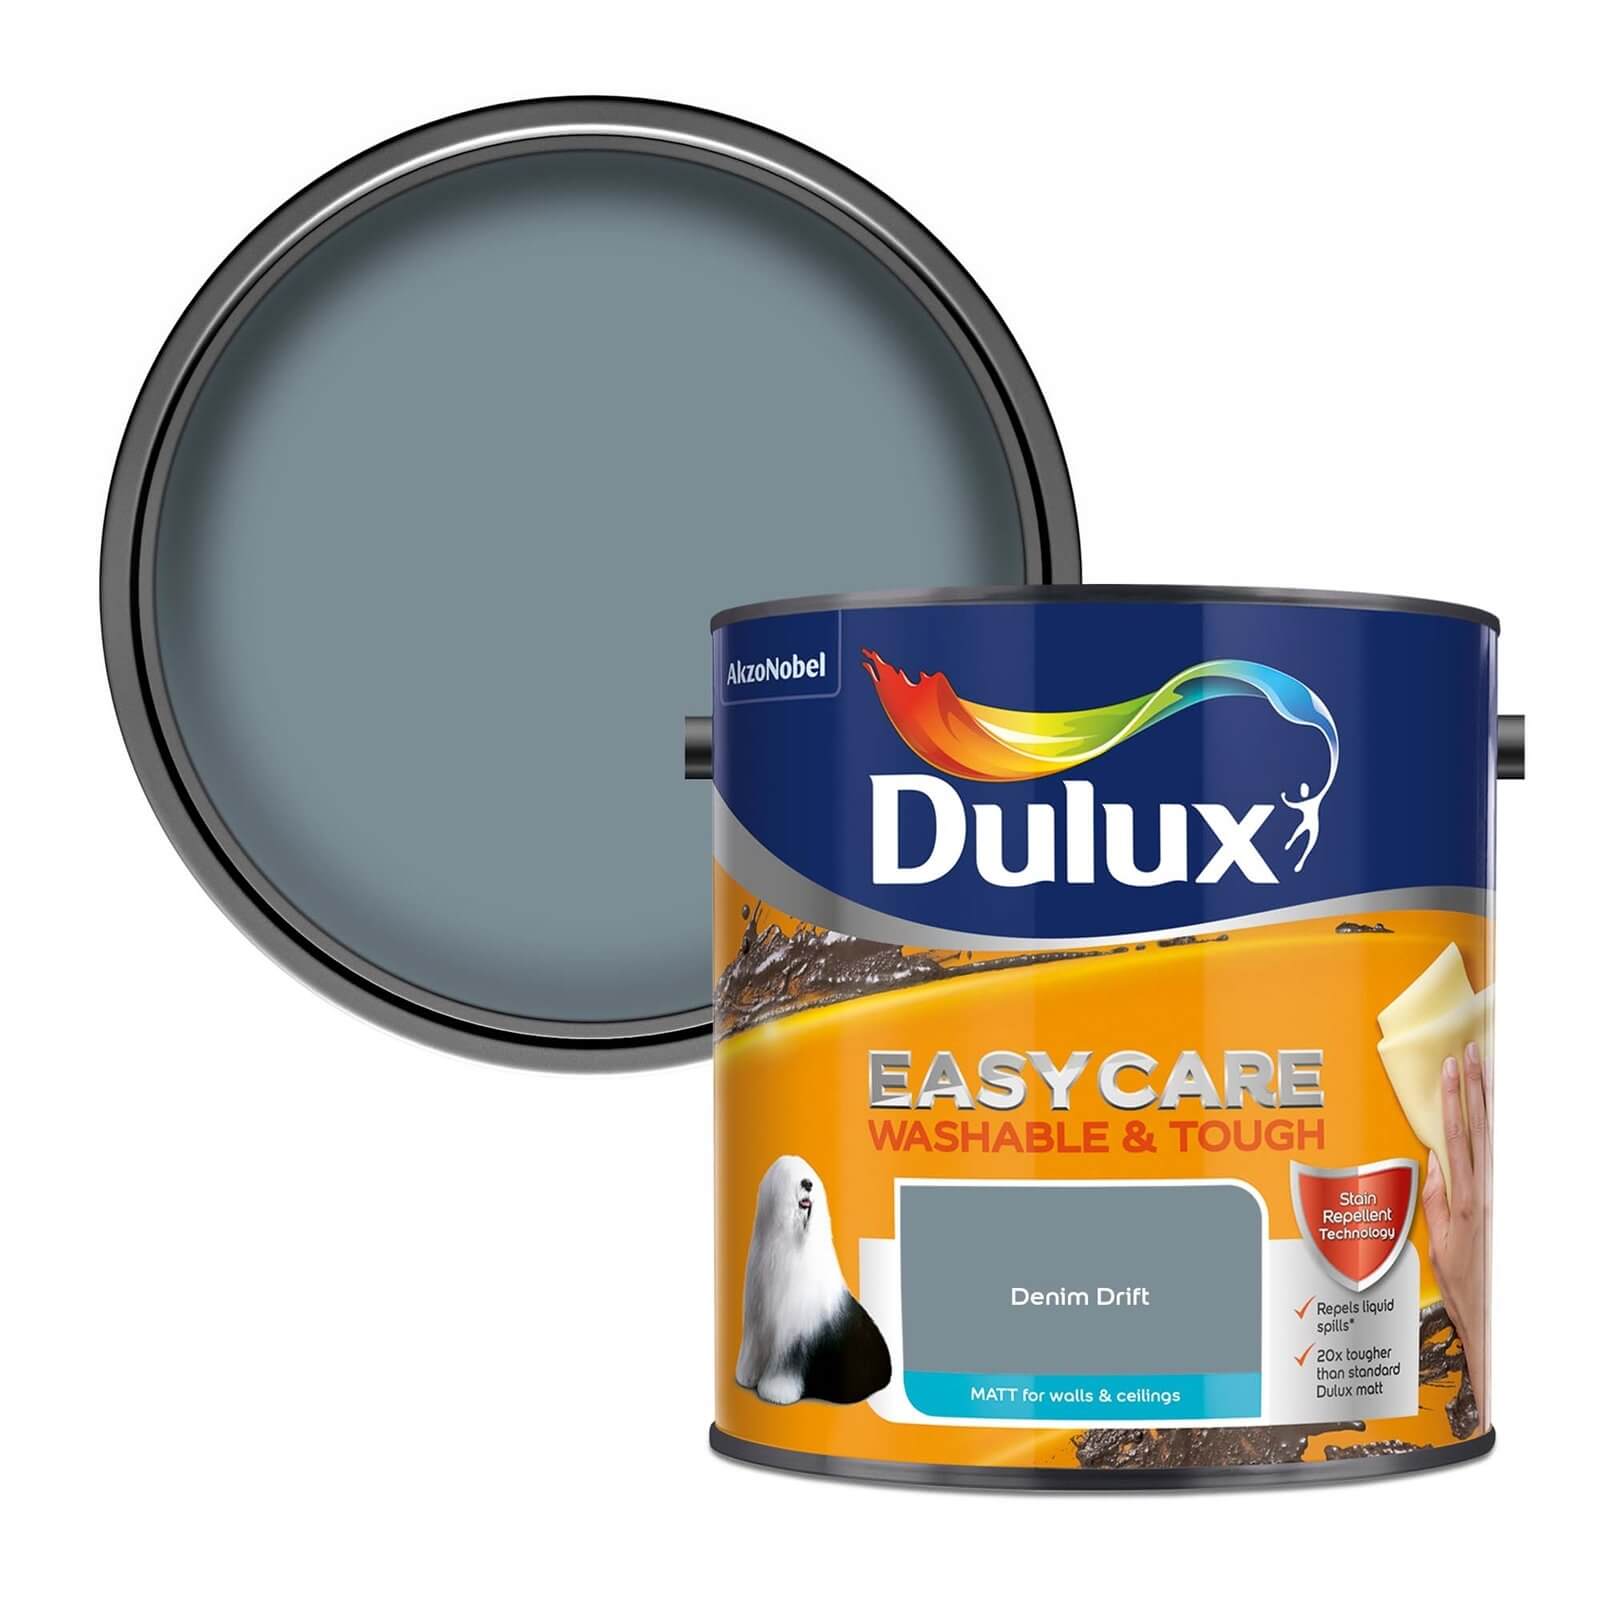 Dulux Easycare Washable & Tough Matt Paint Denim Drift - 2.5L